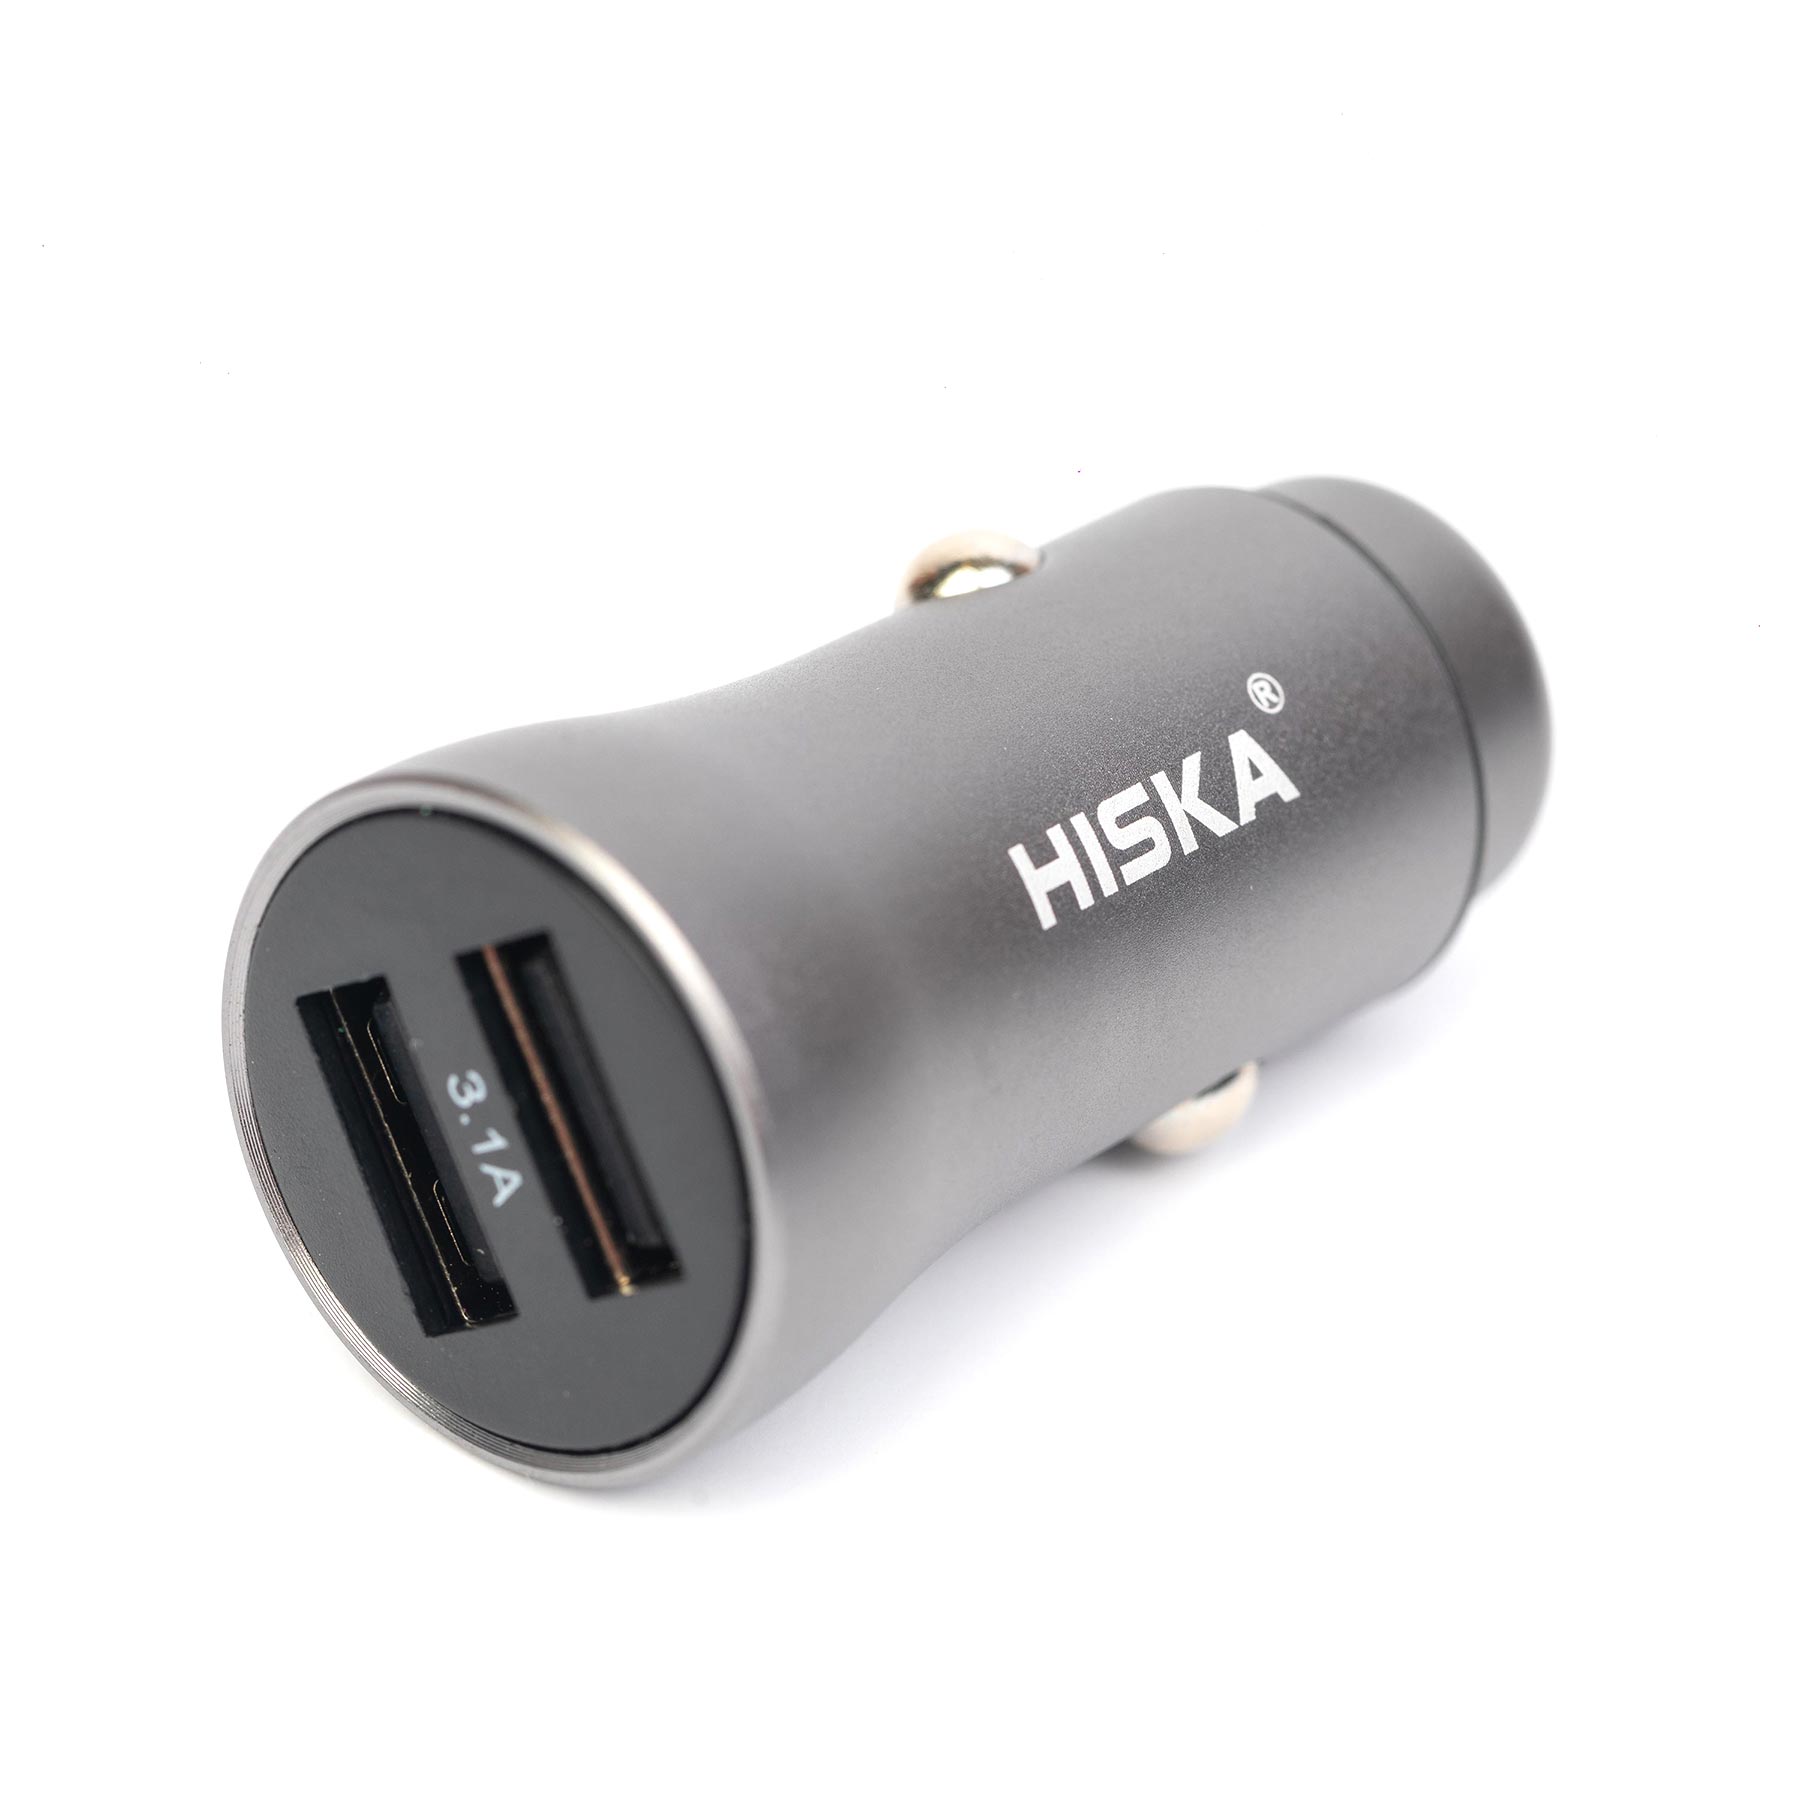 HX-MOG360 Car cigarette lighter charging KL-C31